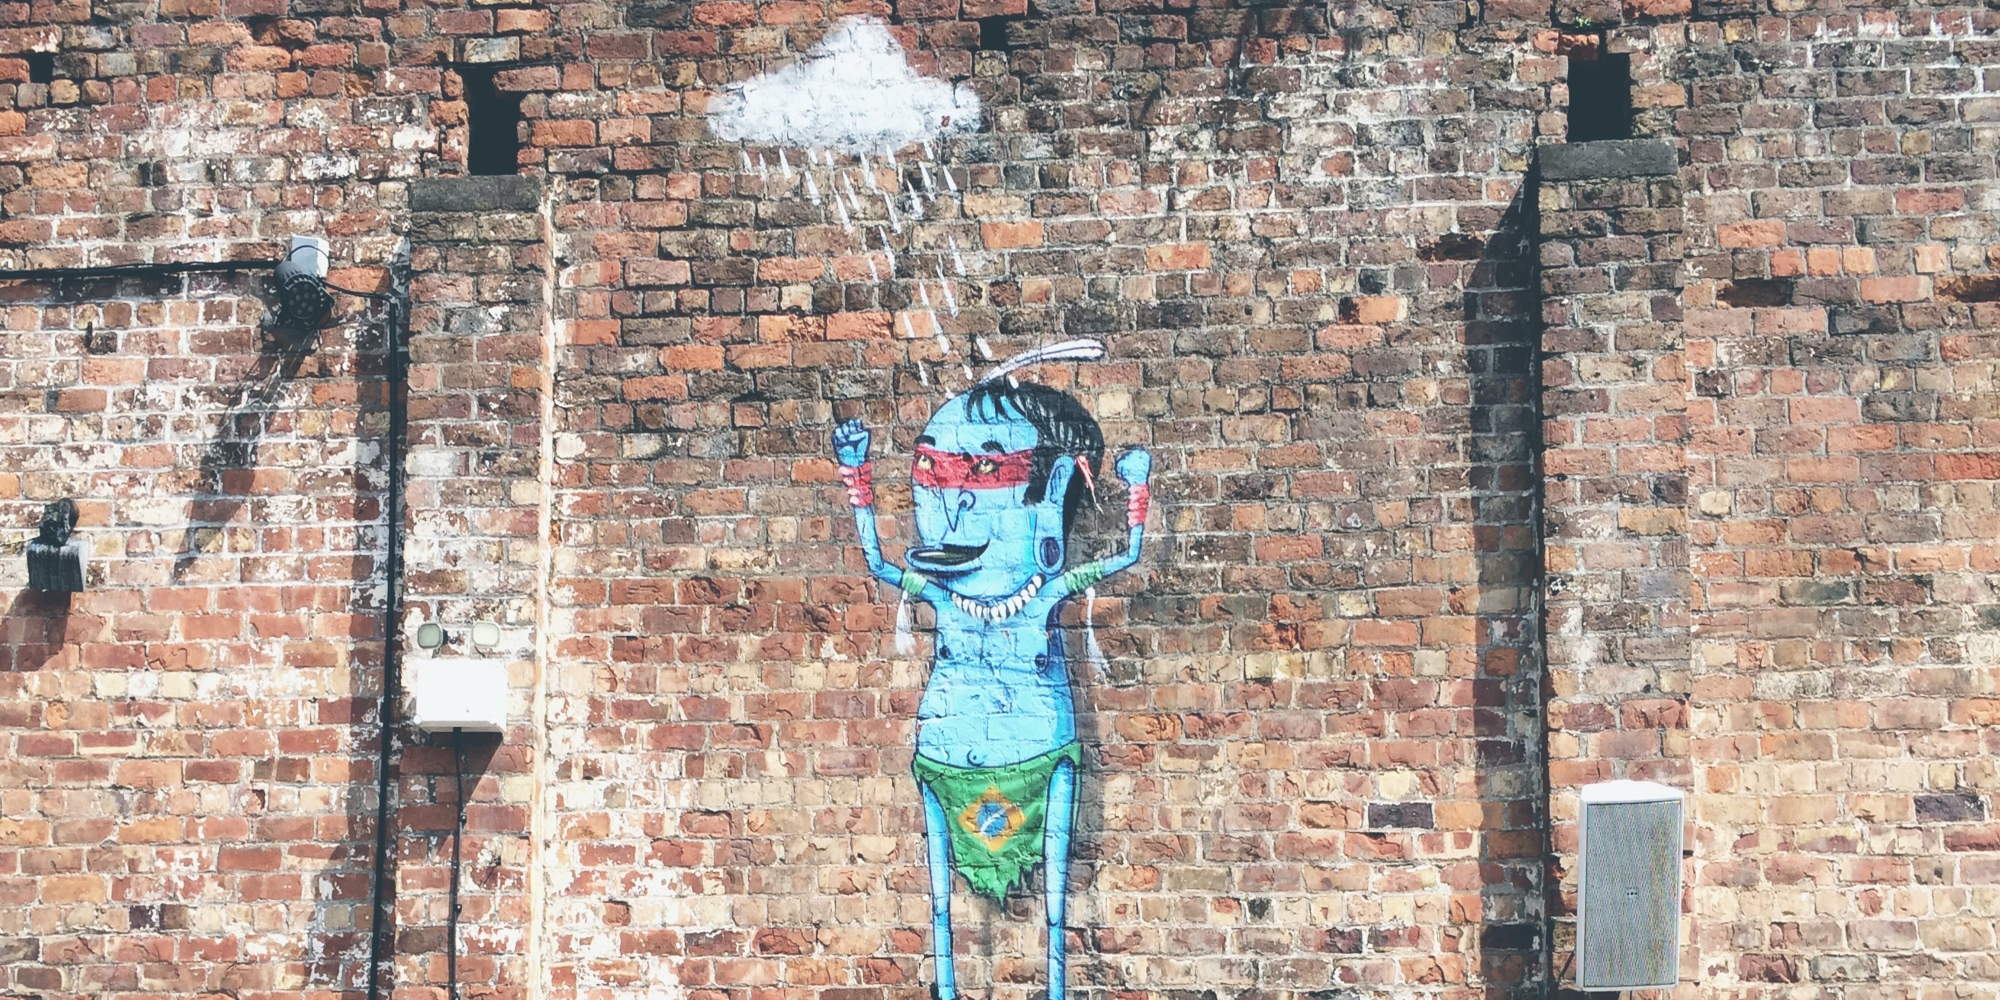 Ένα γκόμπλιν σε γκράφιτι στον τοίχο, αναφορικά με τη λέξη της χρονιάς